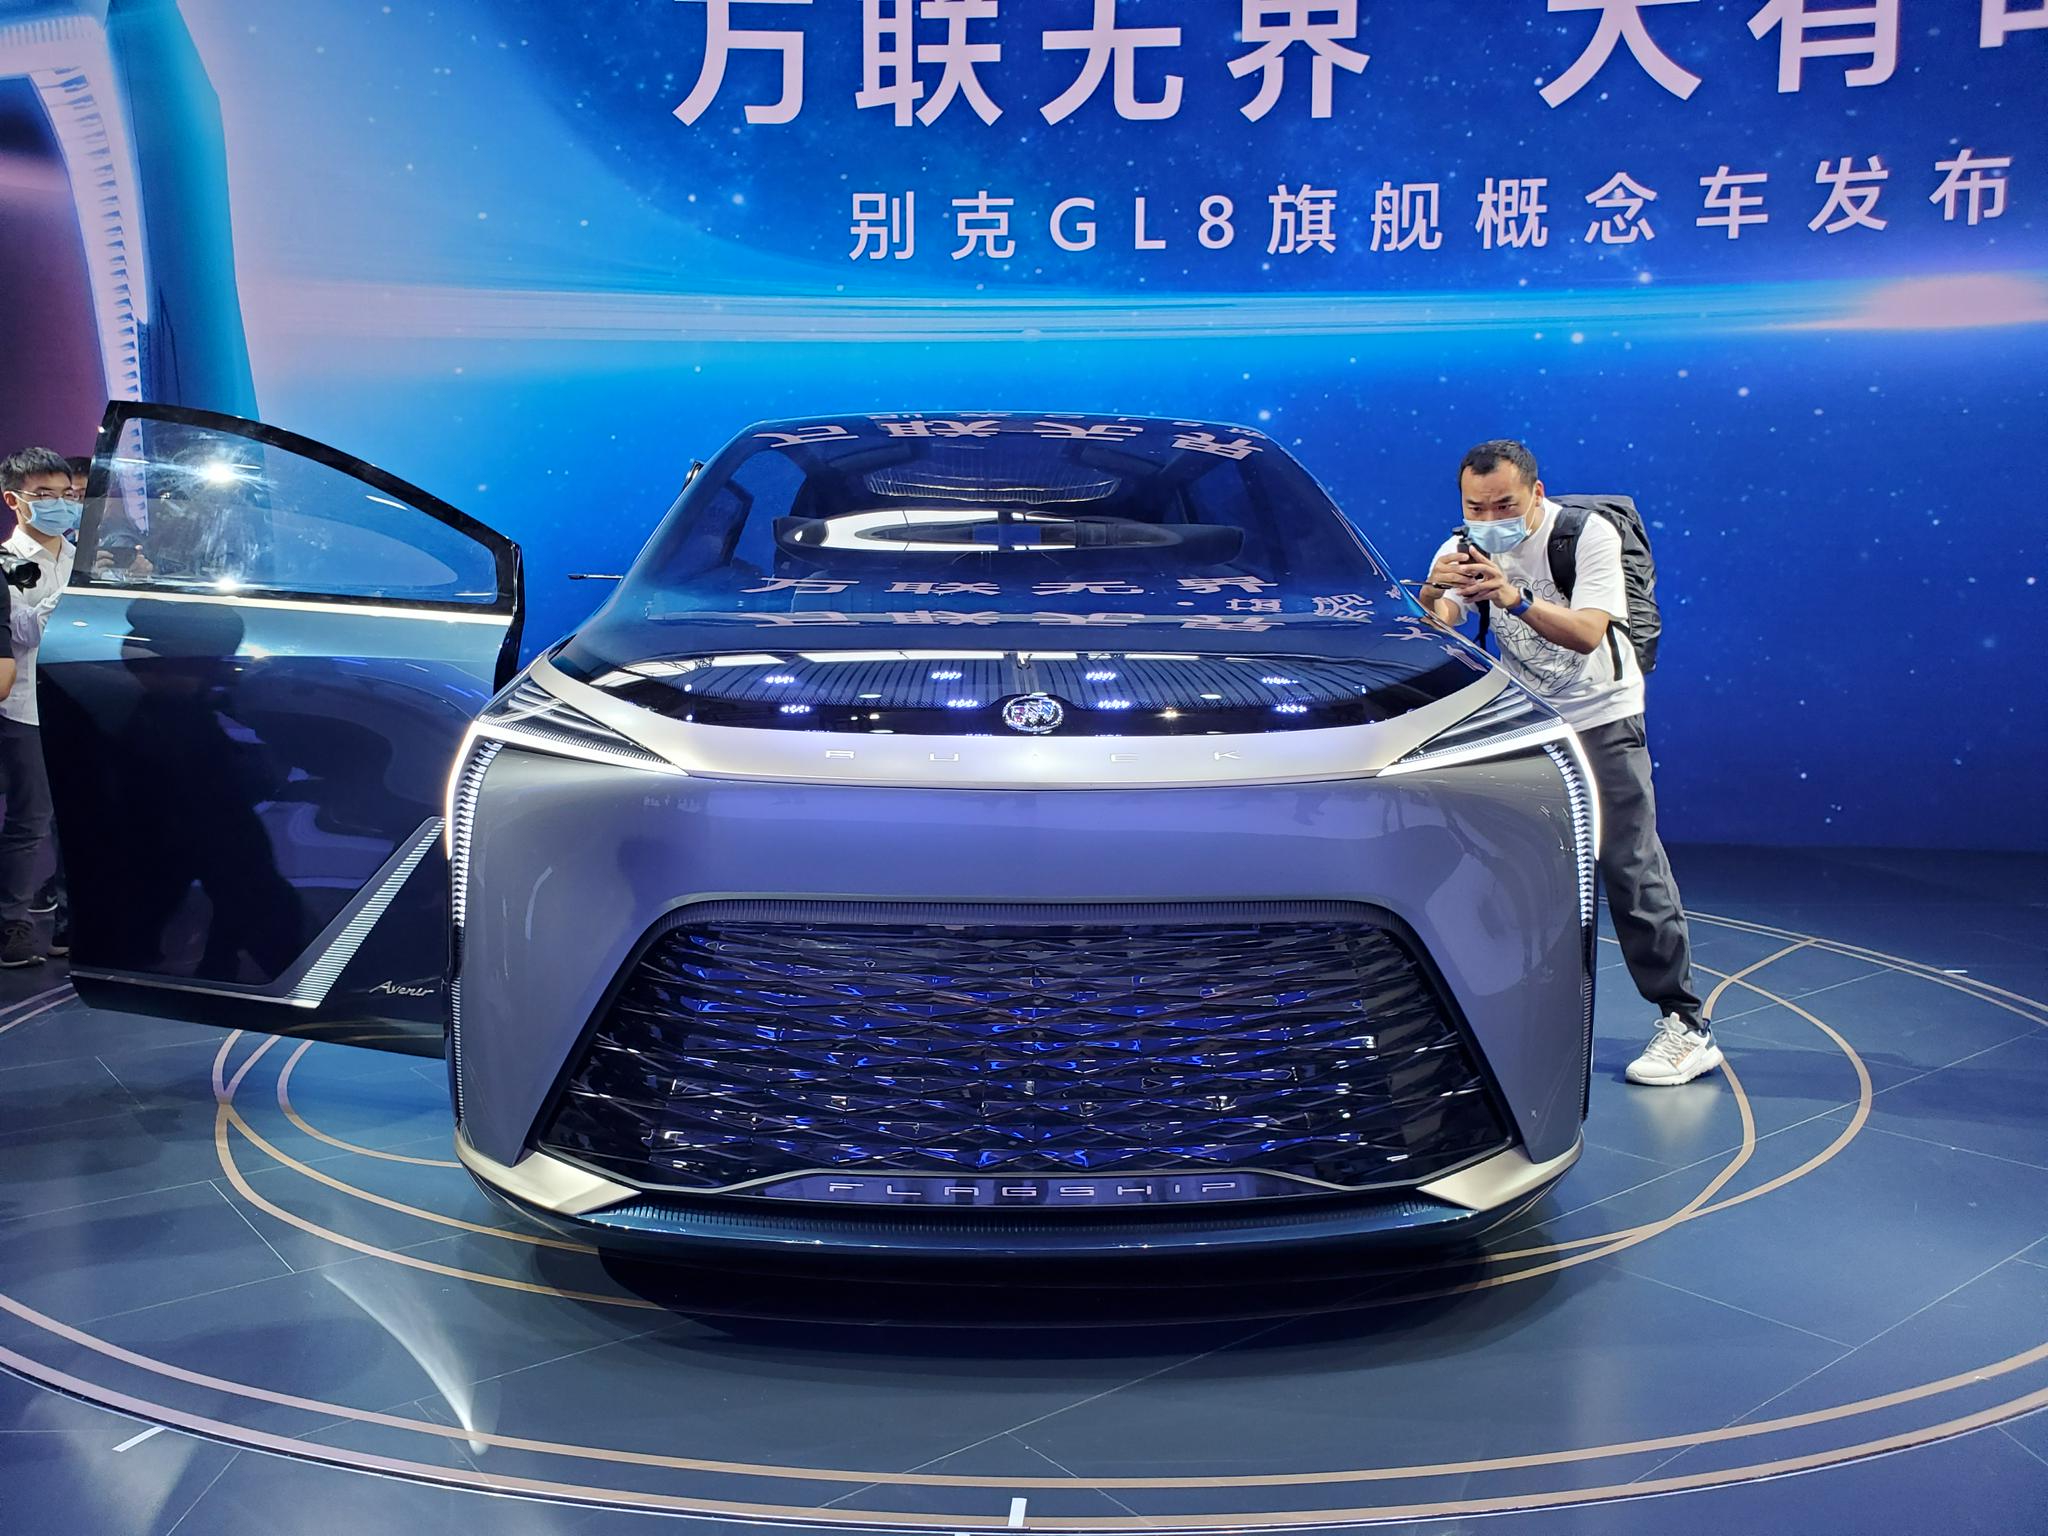 2021广州车展 别克GL8旗舰概念车 预示下一代设计方向